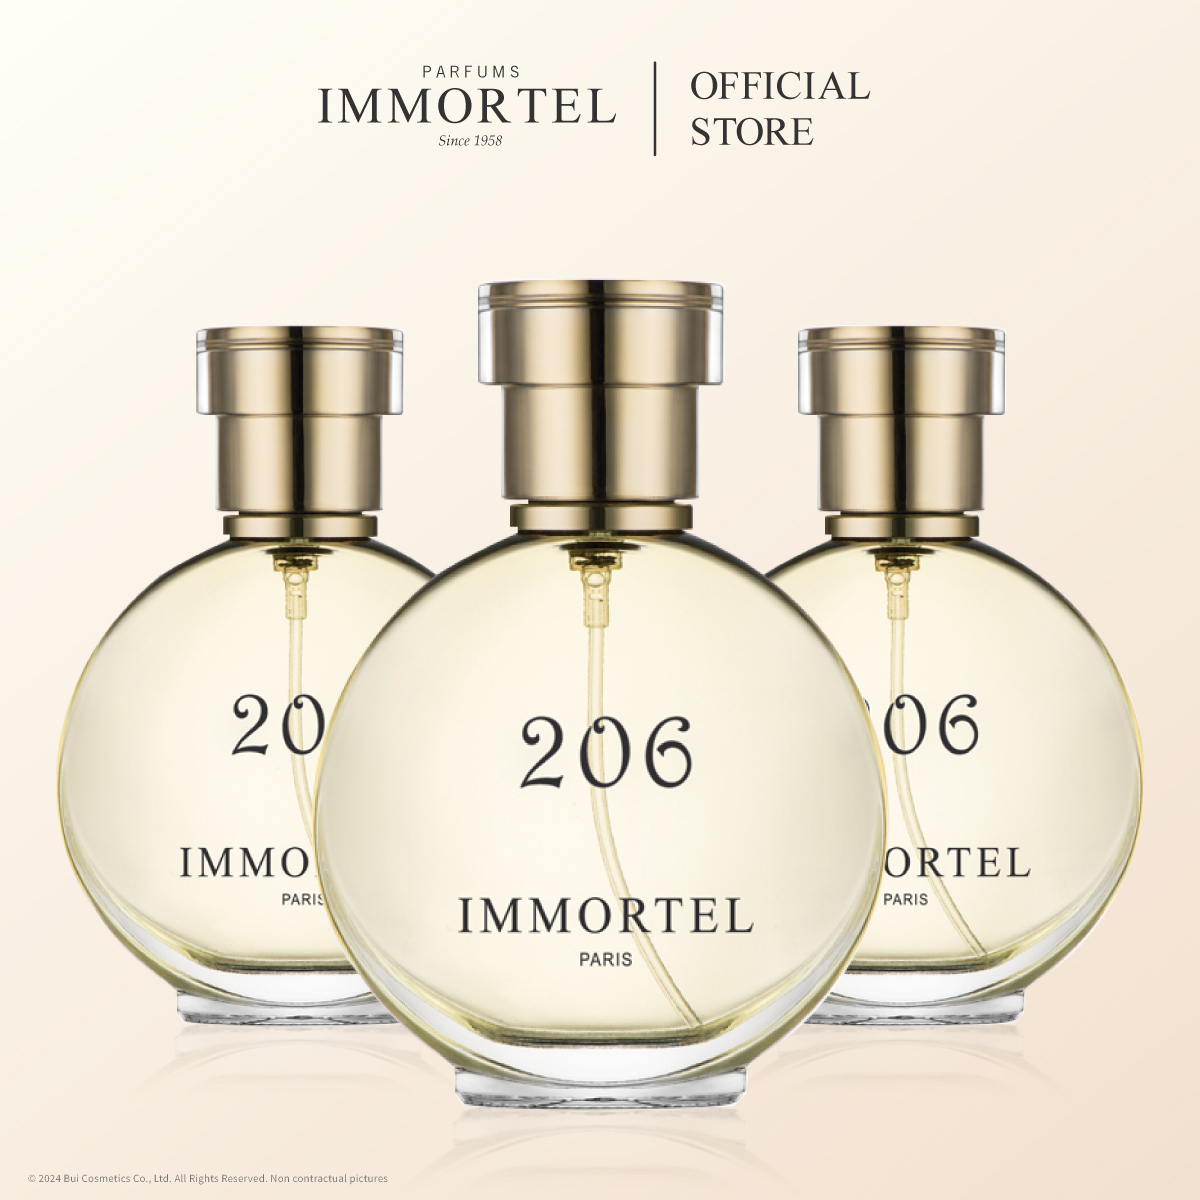 Nước Hoa Nữ IMMORTEL 206 - Eau de Parfum 60mL Nhập Khẩu Chính Hãng Pháp